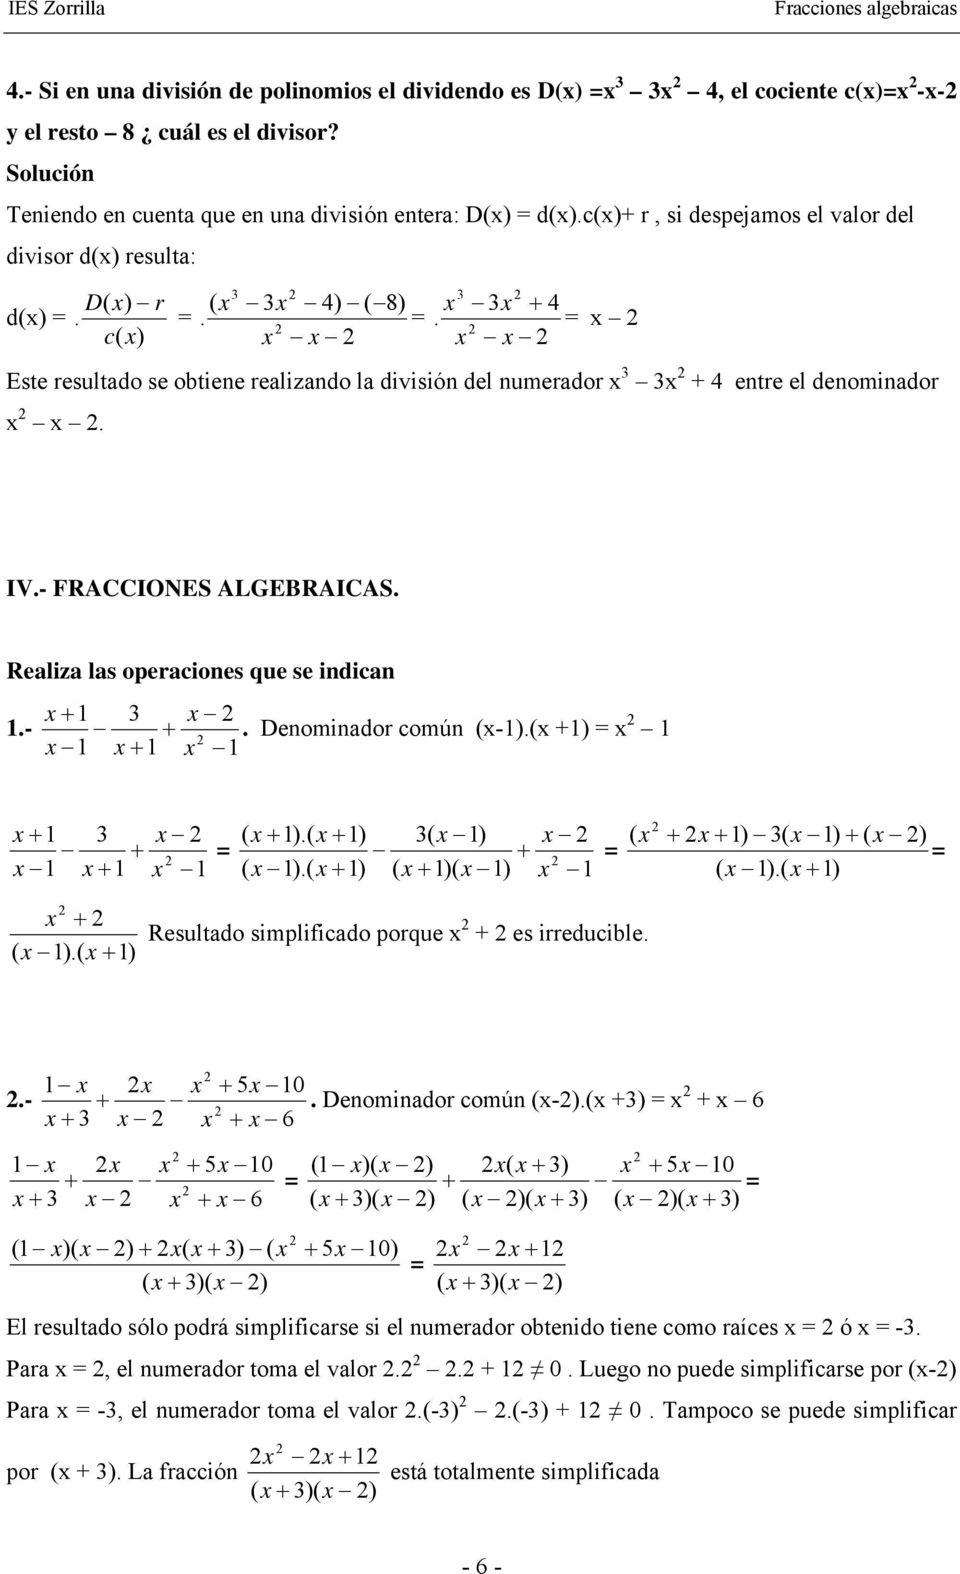 denominador IV- FRACCIONES ALGEBRAICAS Realiza las operaciones que se indican - Denominador común - ) Resultado simplificado porque es irreducible 5 0 - Denominador común -) ) 6 6 5 0 6 ) ) ) ) ) ) )